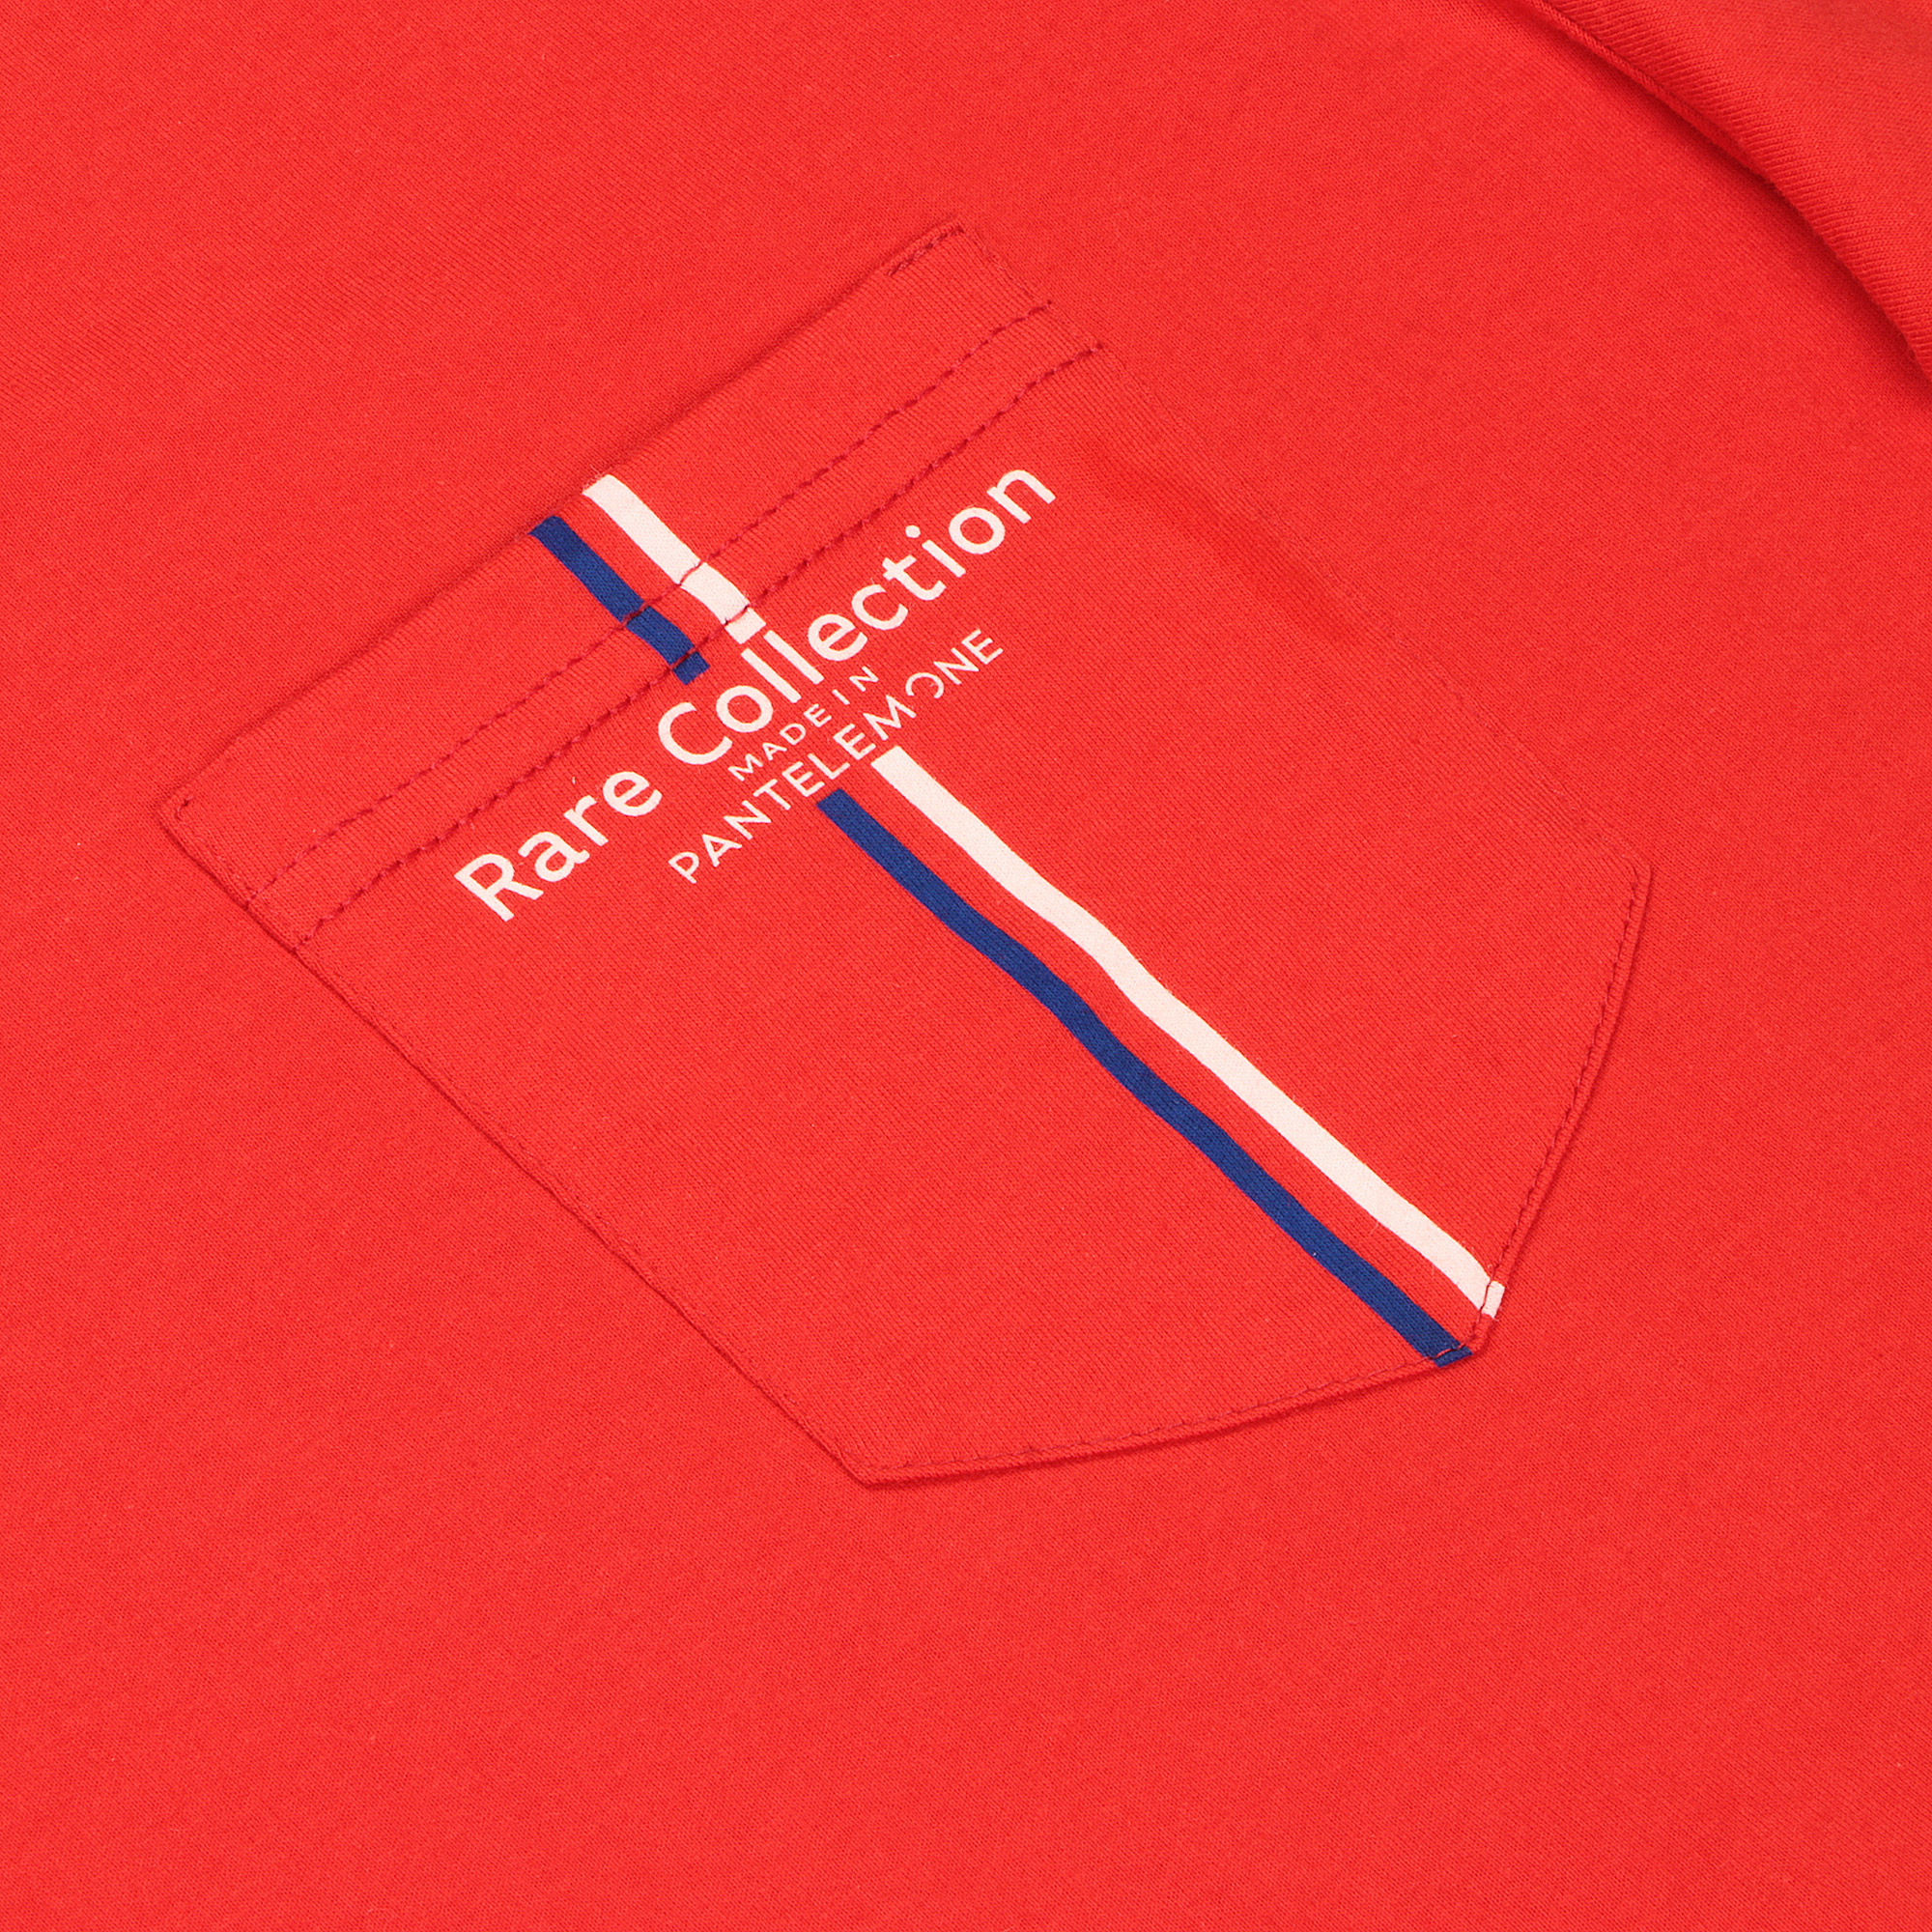 Мужская футболка Pantelemone MF-898 красная 54, цвет красный, размер 54 - фото 2